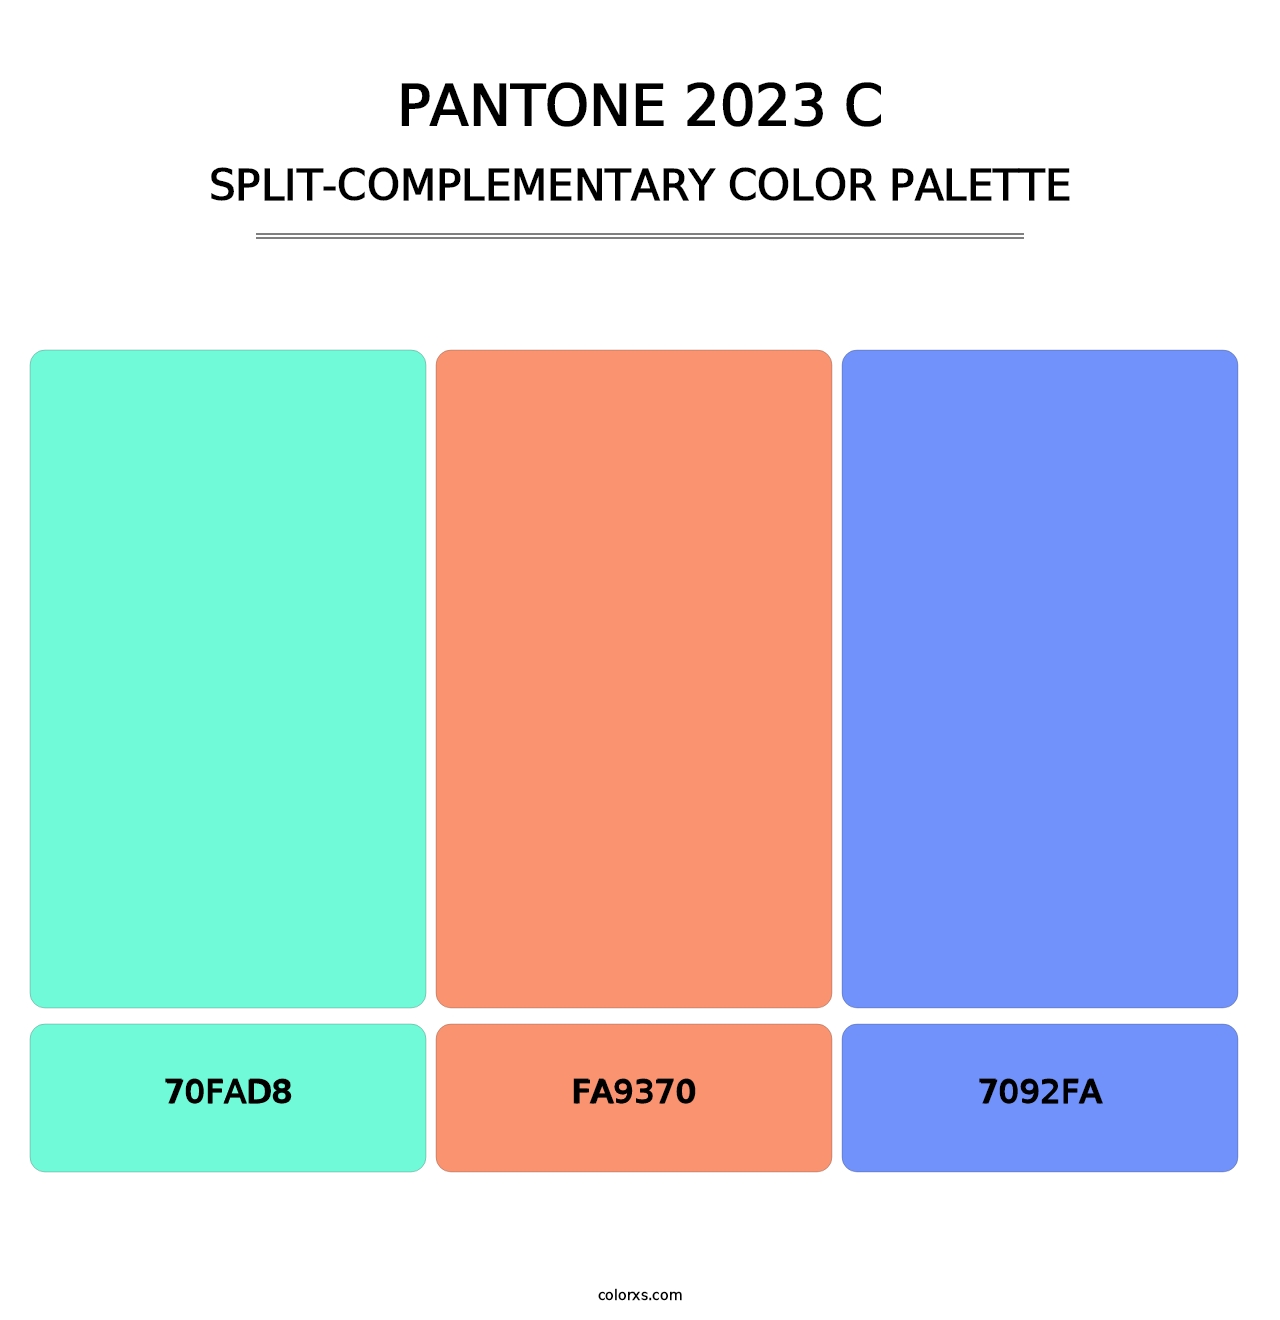 PANTONE 2023 C - Split-Complementary Color Palette